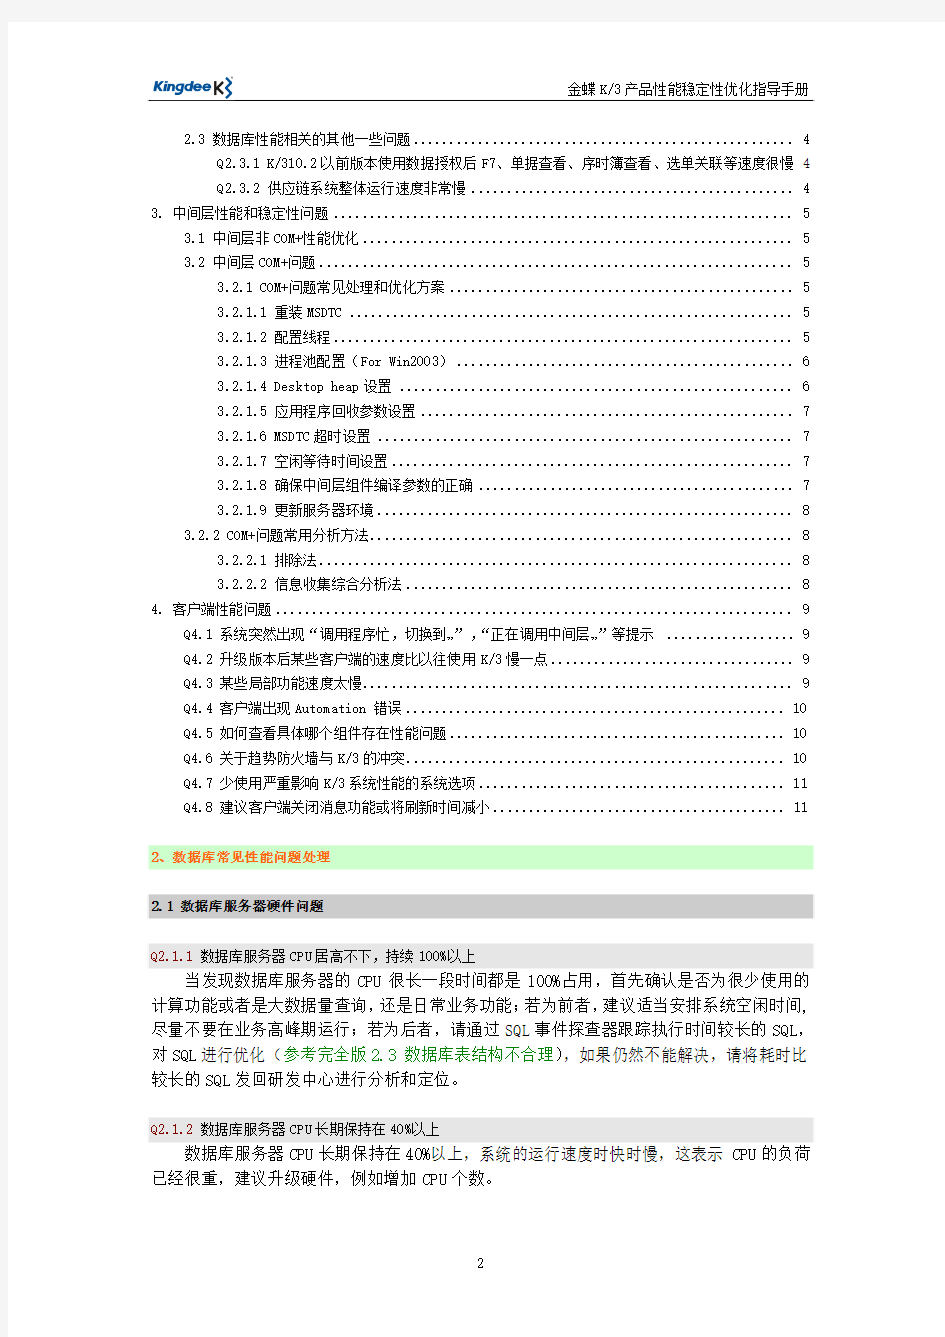 金蝶K3产品性能稳定性优化指导手册(精简版V2.0)